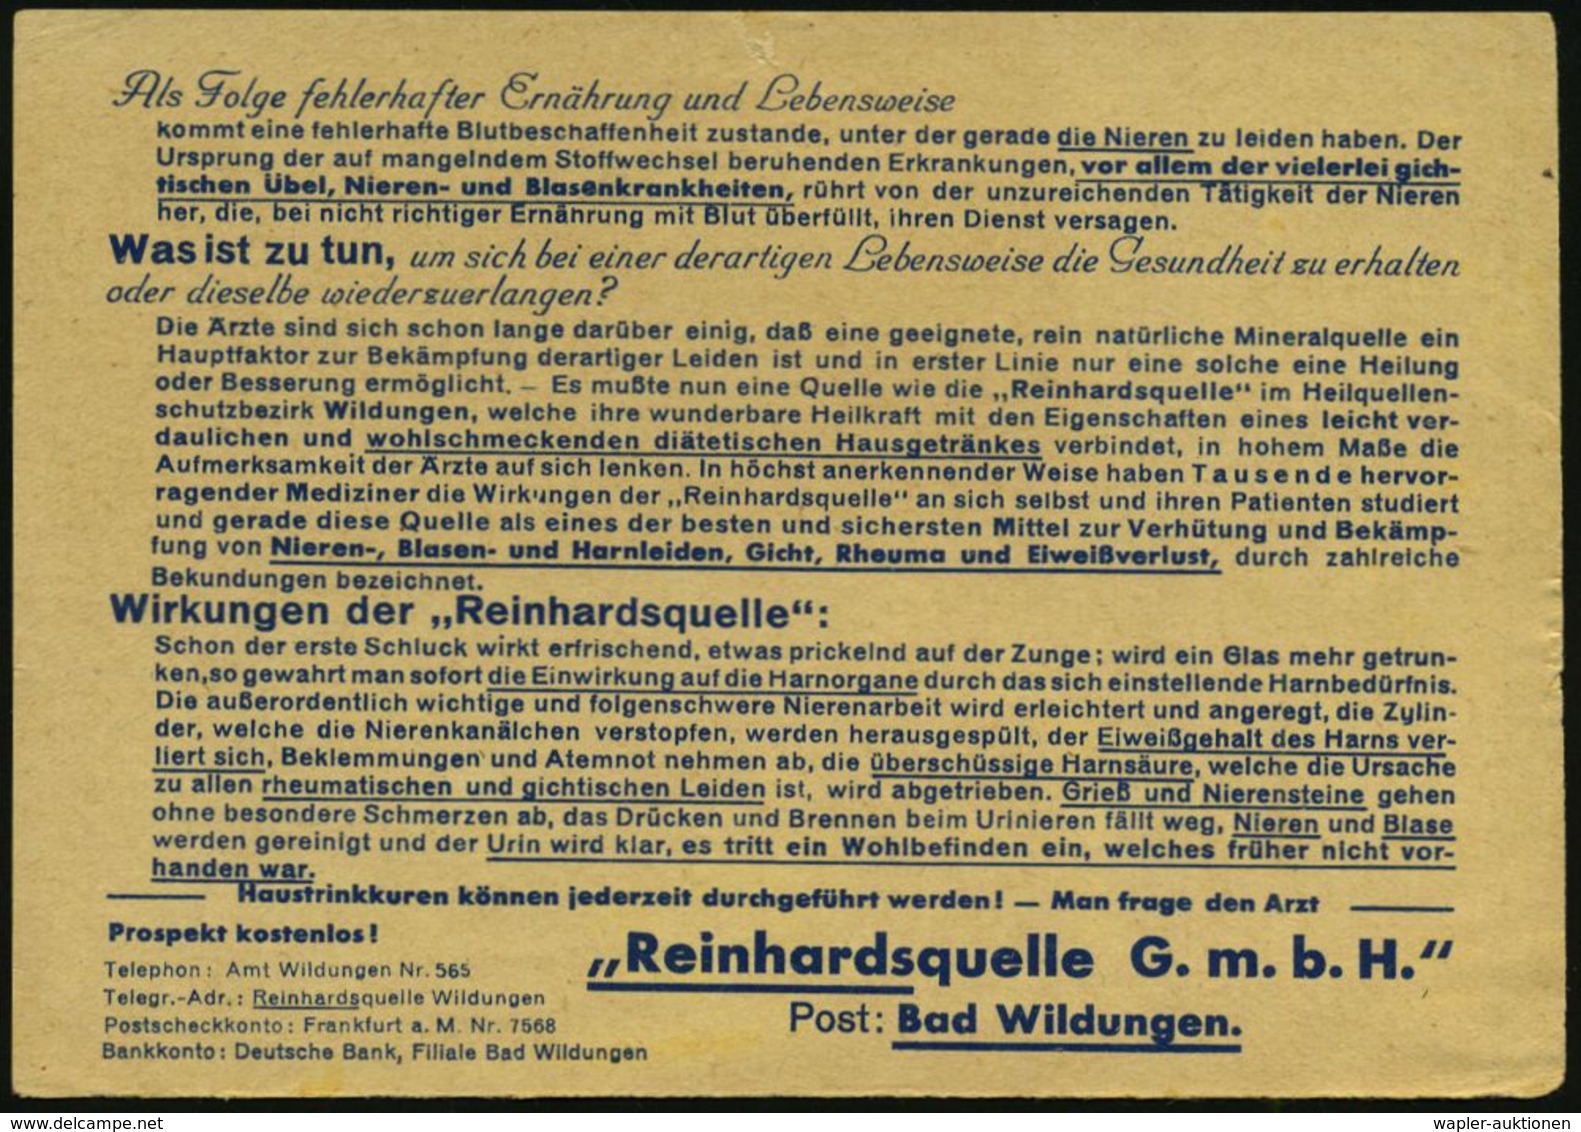 KURORTE / HEILQUELLEN : BAD WILDUNGEN/ Sprudelbäder../ Heilquellenversand Reinhardsquelle GmbH 1938 (24.6.) AFS  = Heilq - Medizin